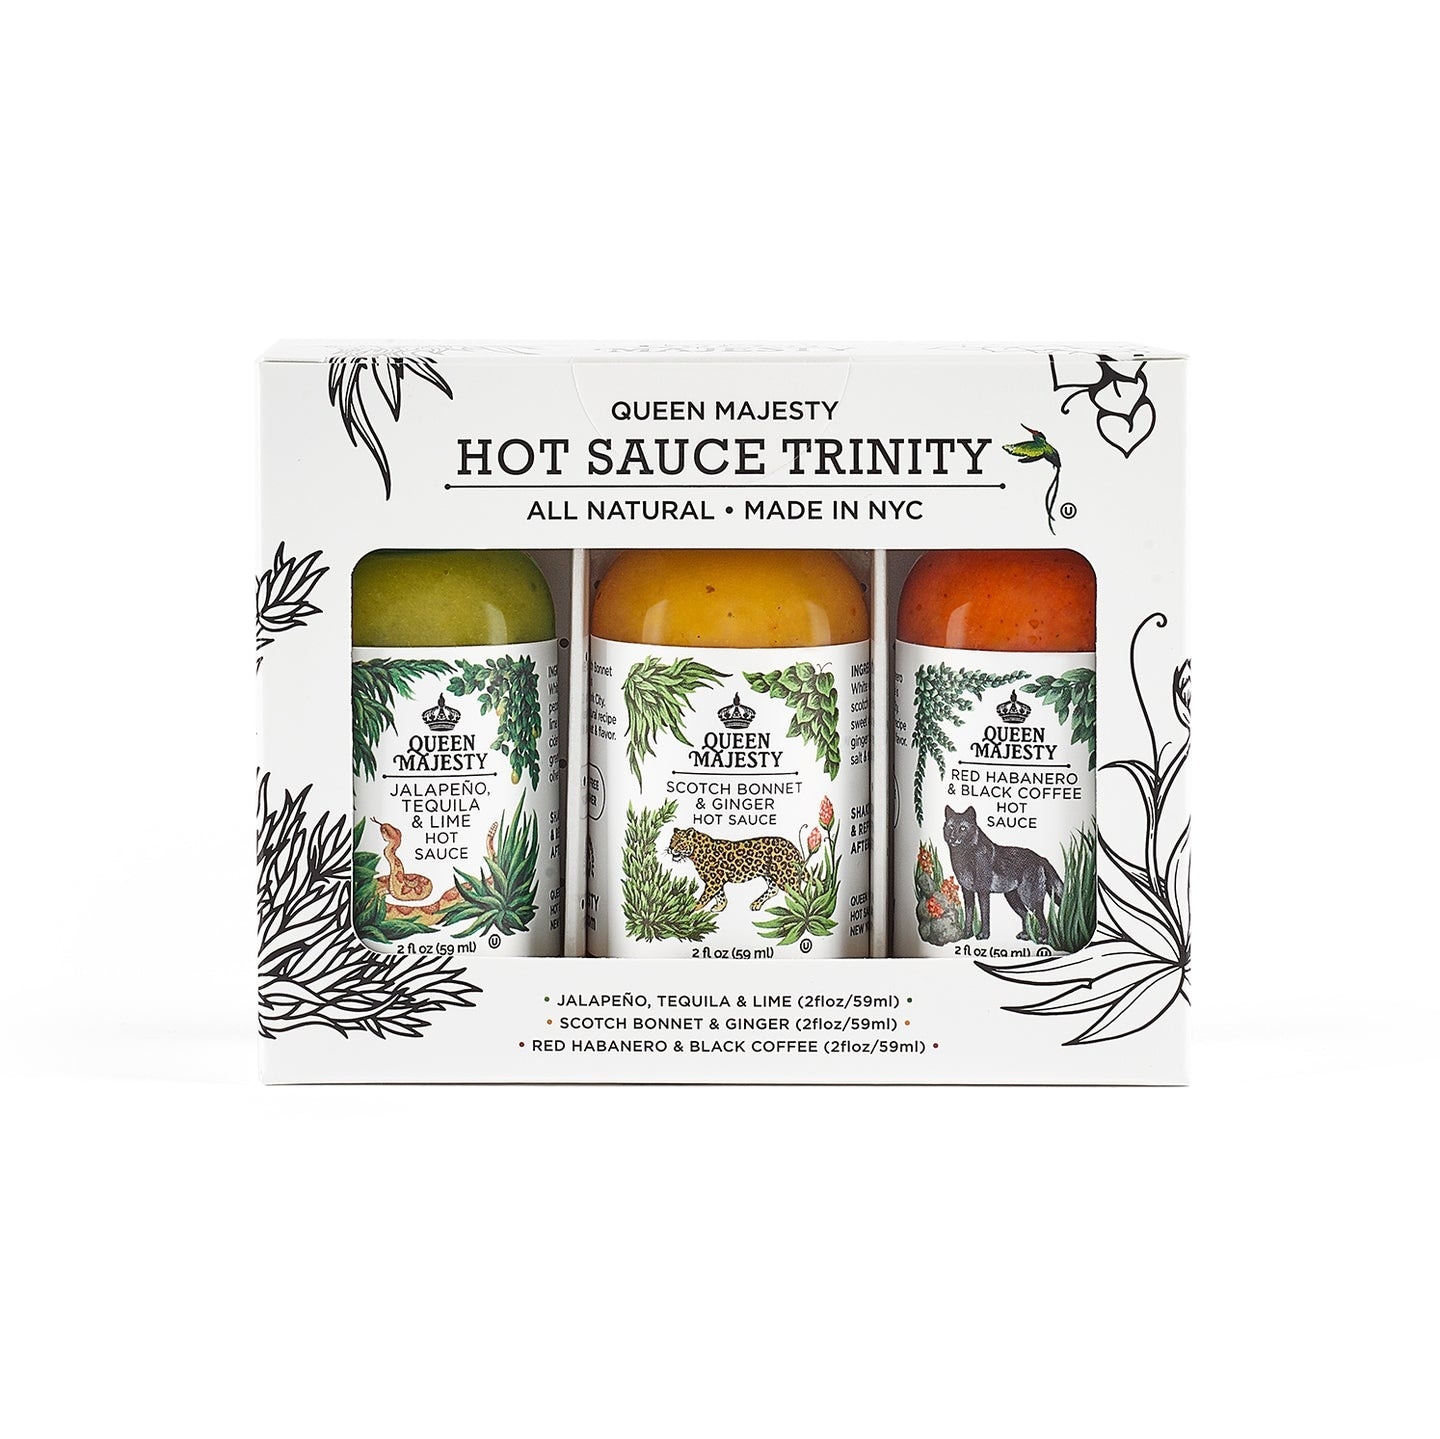 Hot sauce trinity